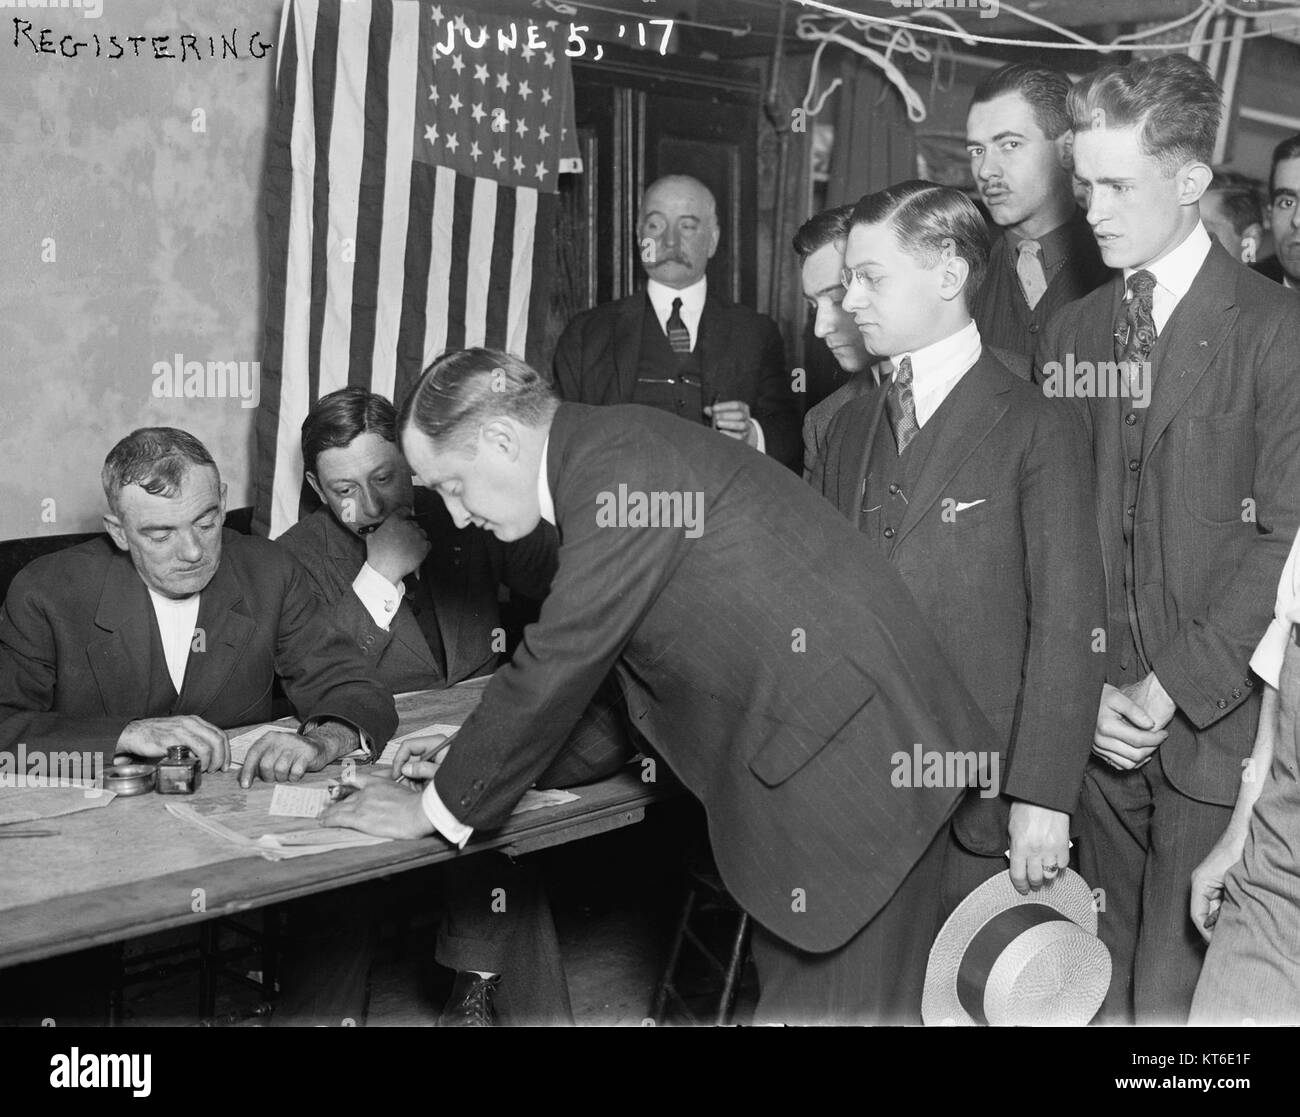 Junge Männer die Registrierung für die Wehrpflicht, New York City, 5. Juni 1917 Stockfoto